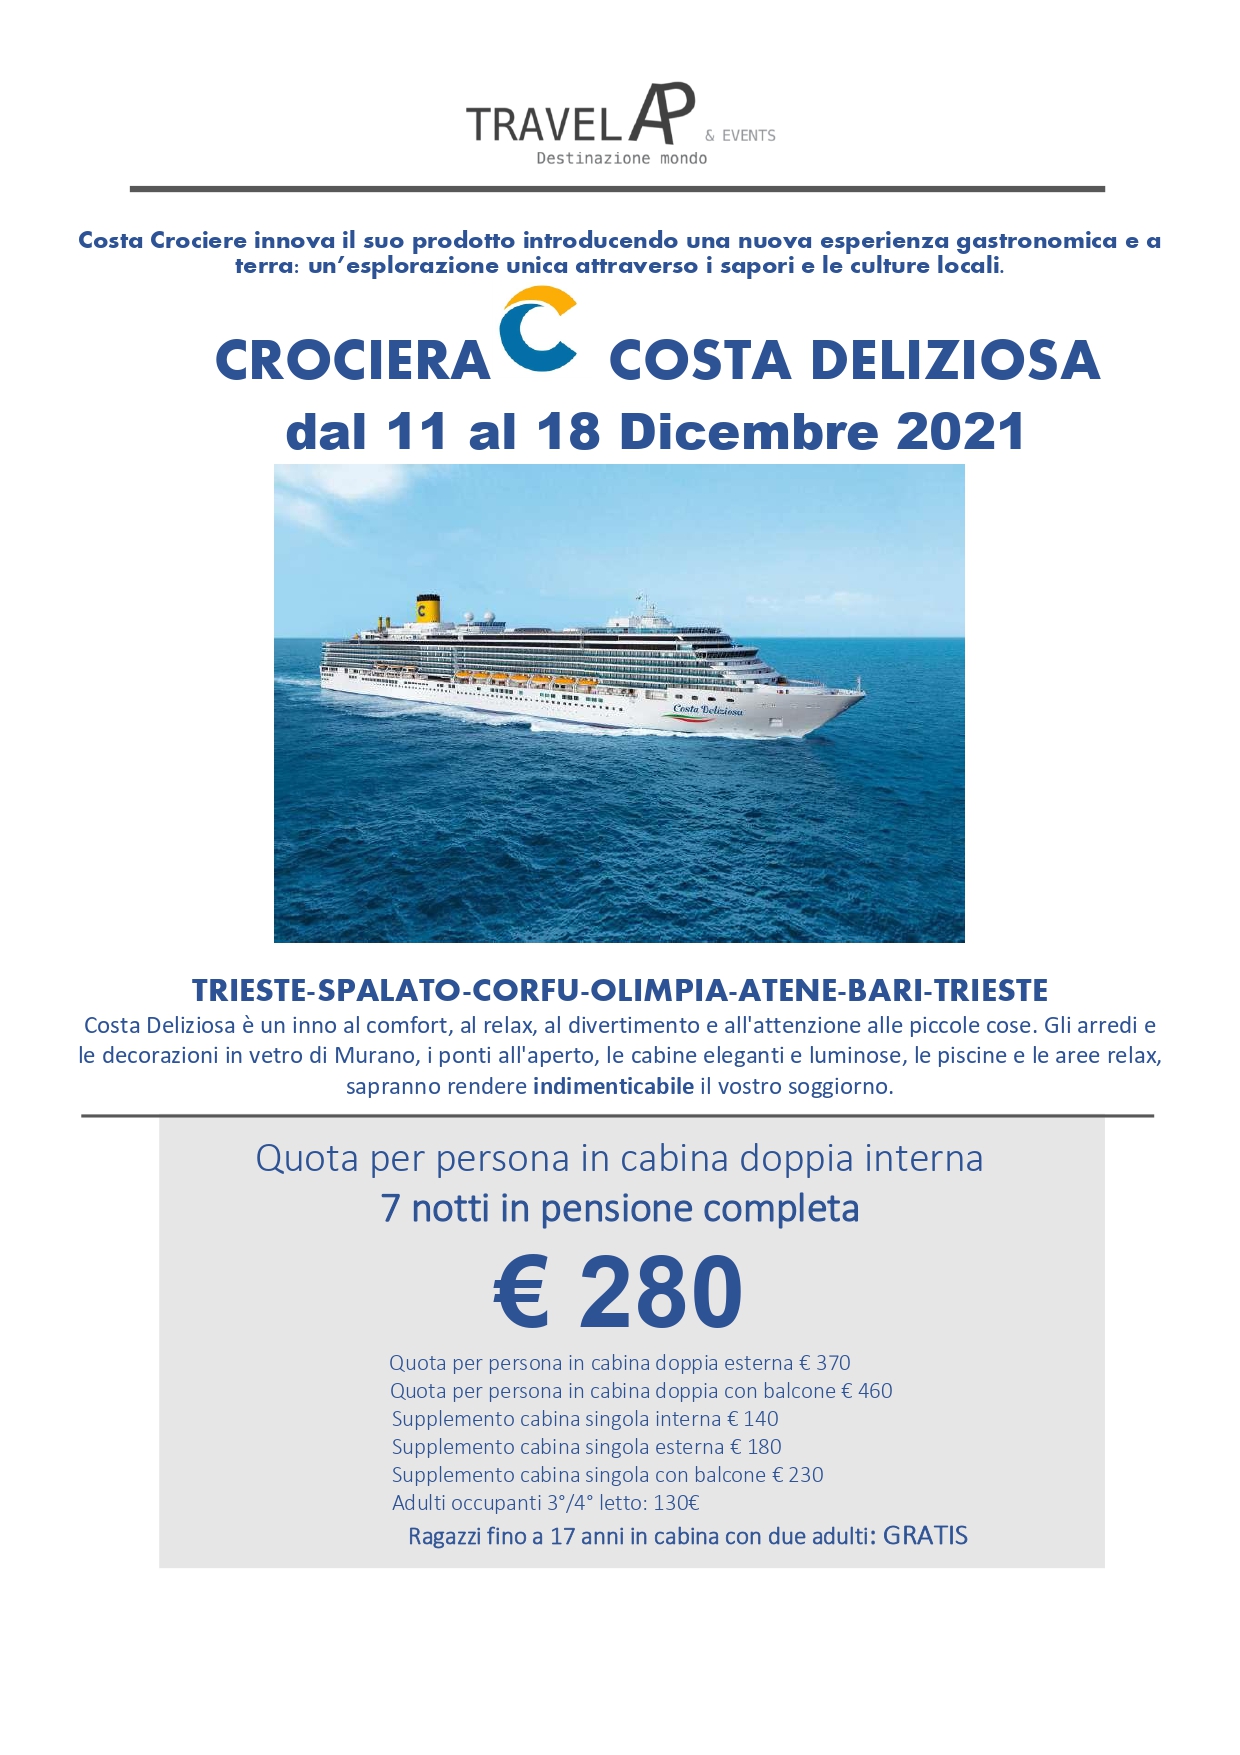 CROCIERA COSTA DELIZIOSA-partenza 11 DICEMBRE da Trieste (2)_page-0001.jpg